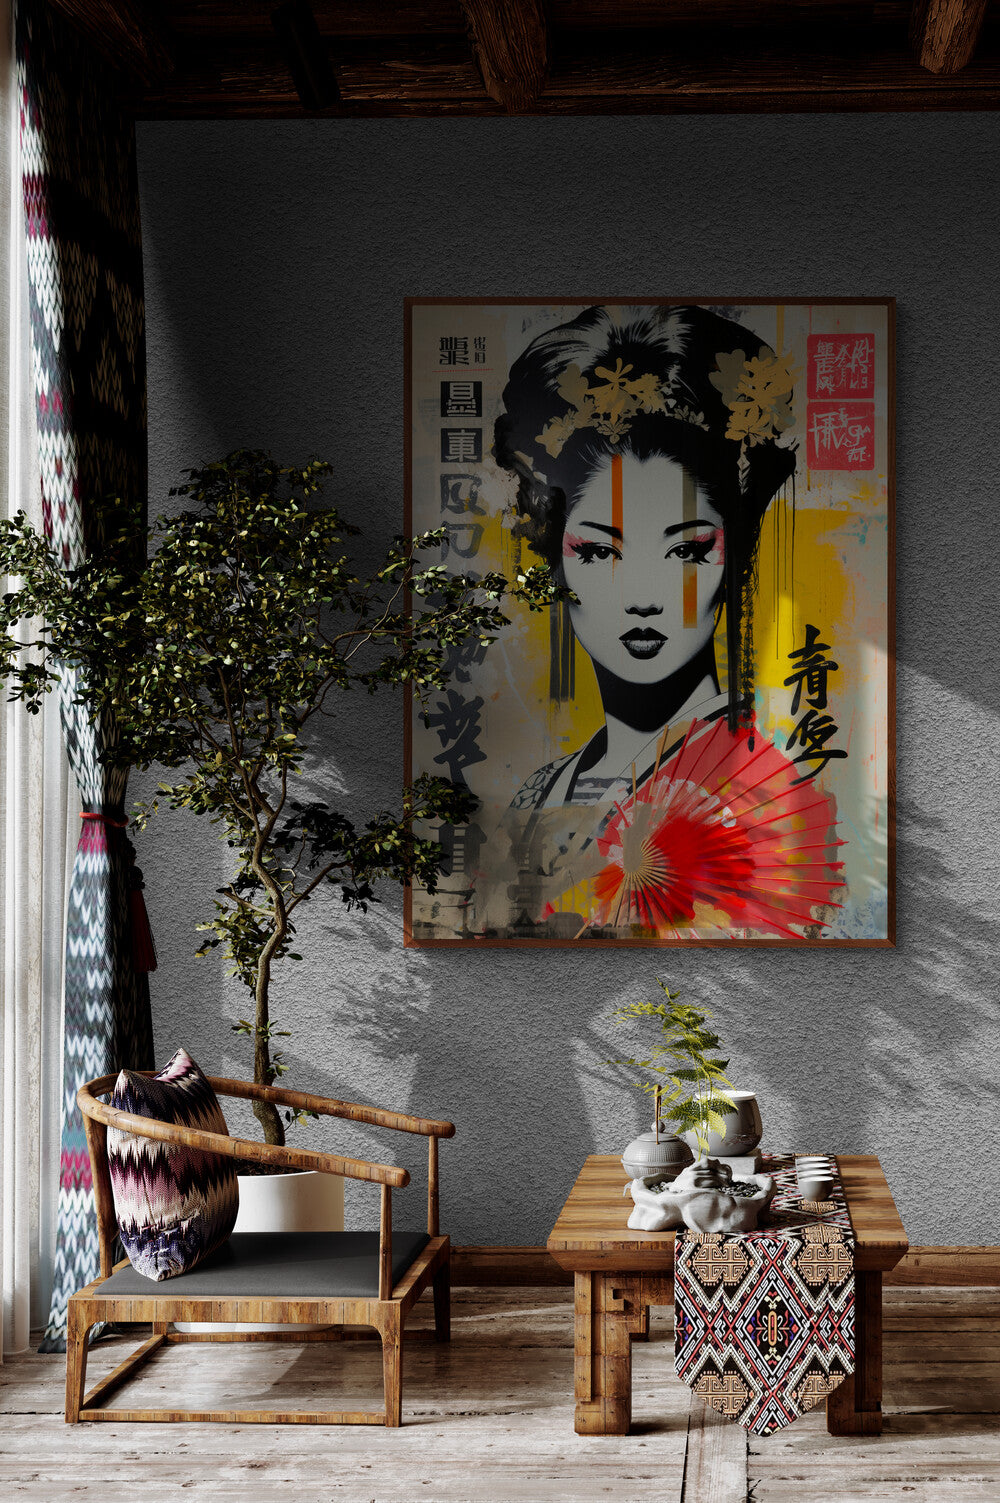 L'élégance traditionnelle rencontre l'art urbain dans un coin de détente, où le tableau de geisha ajoute un point focal audacieux et artistique